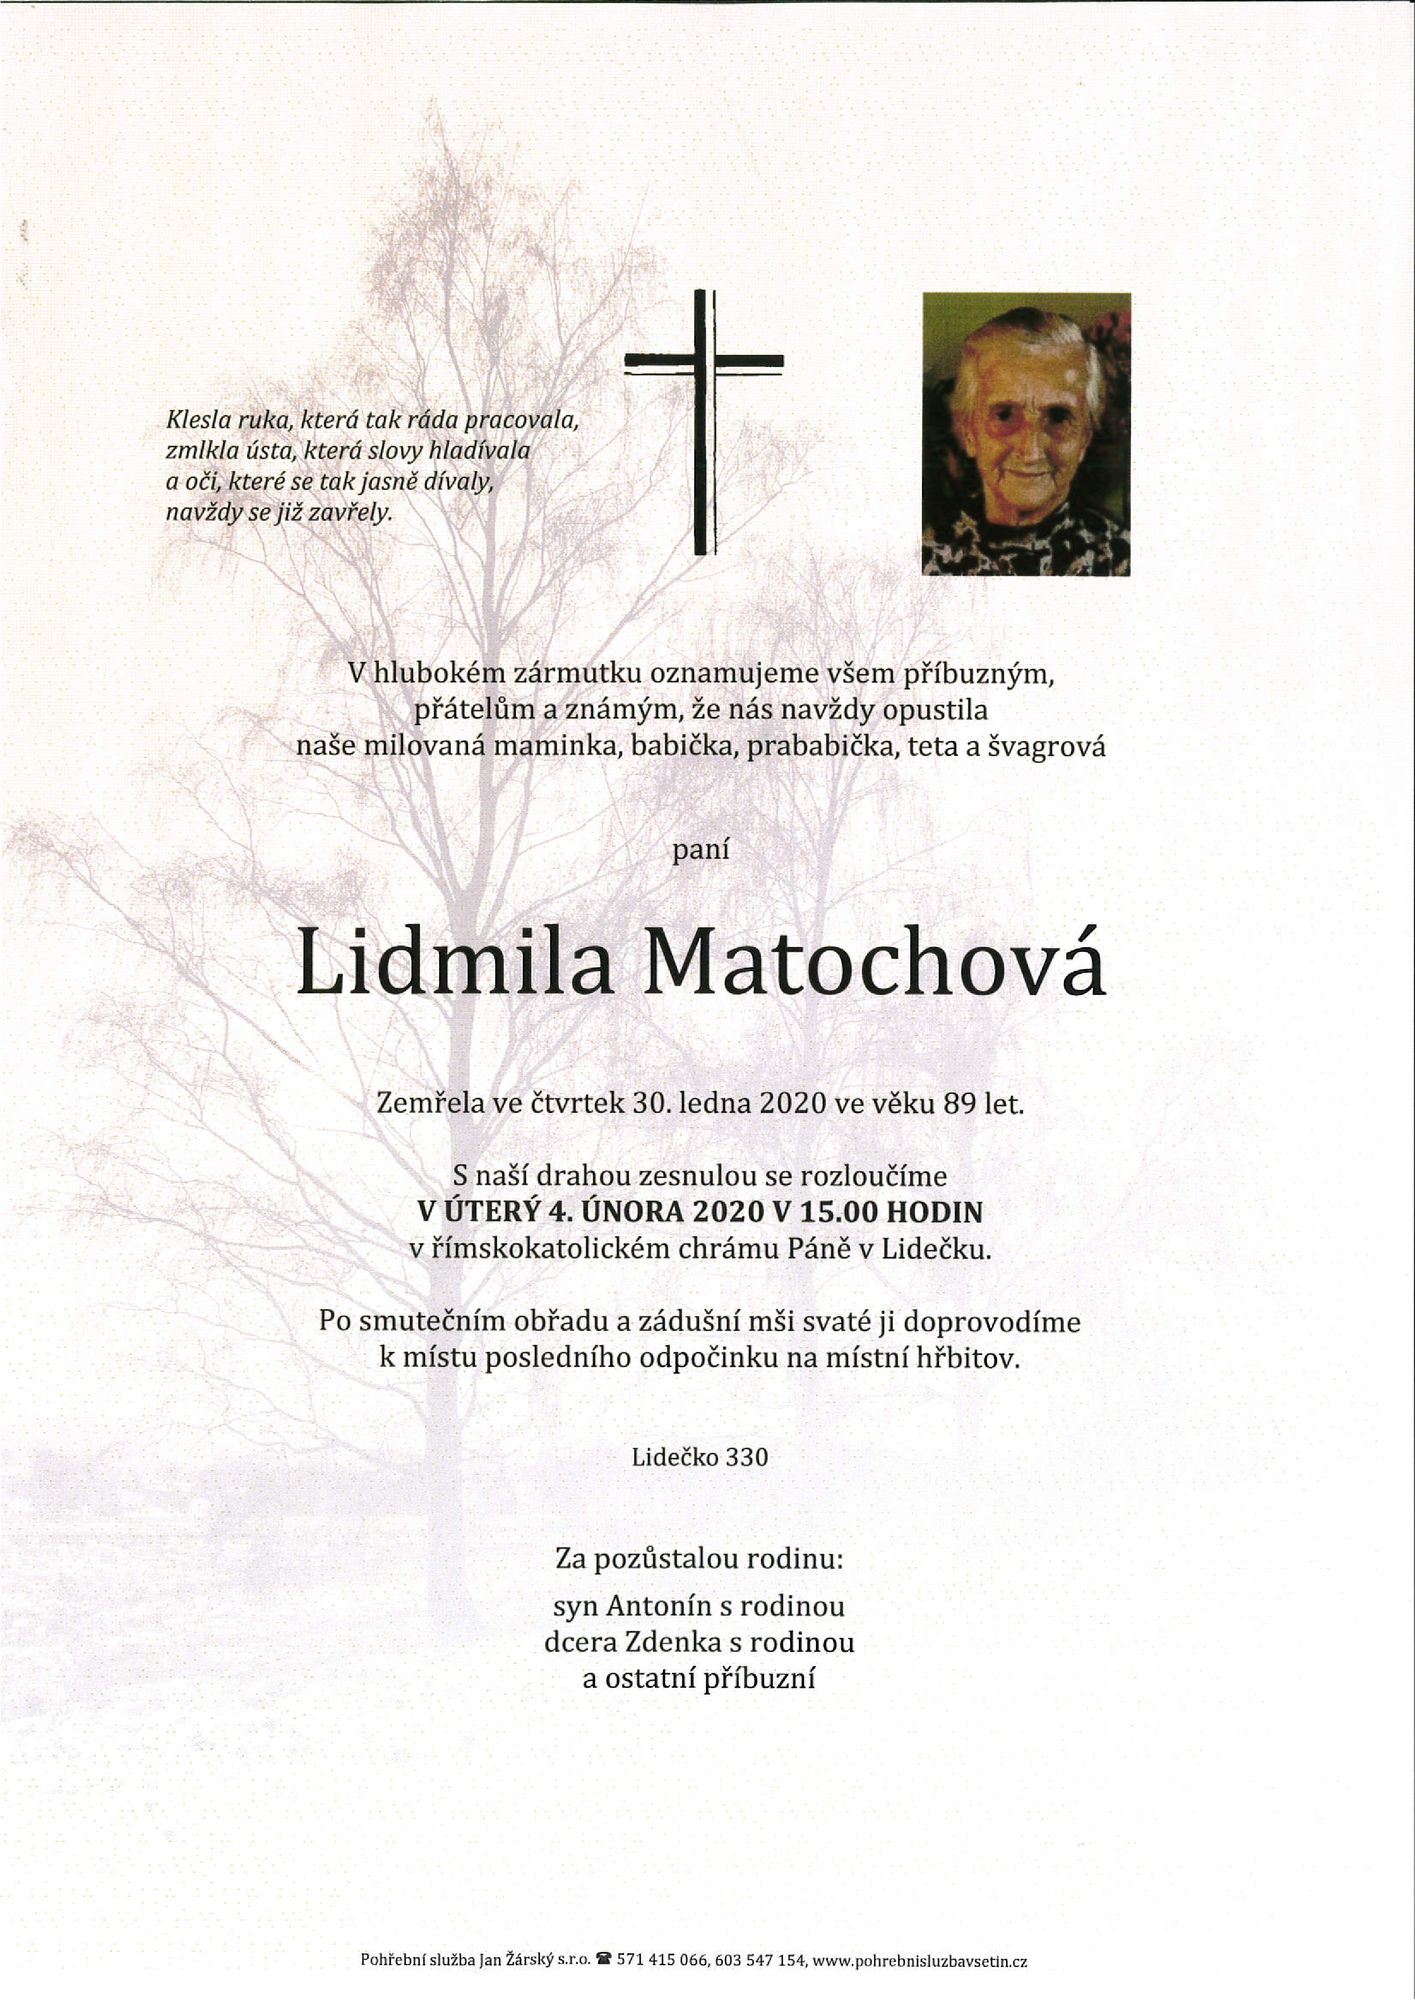 Lidmila Matochová